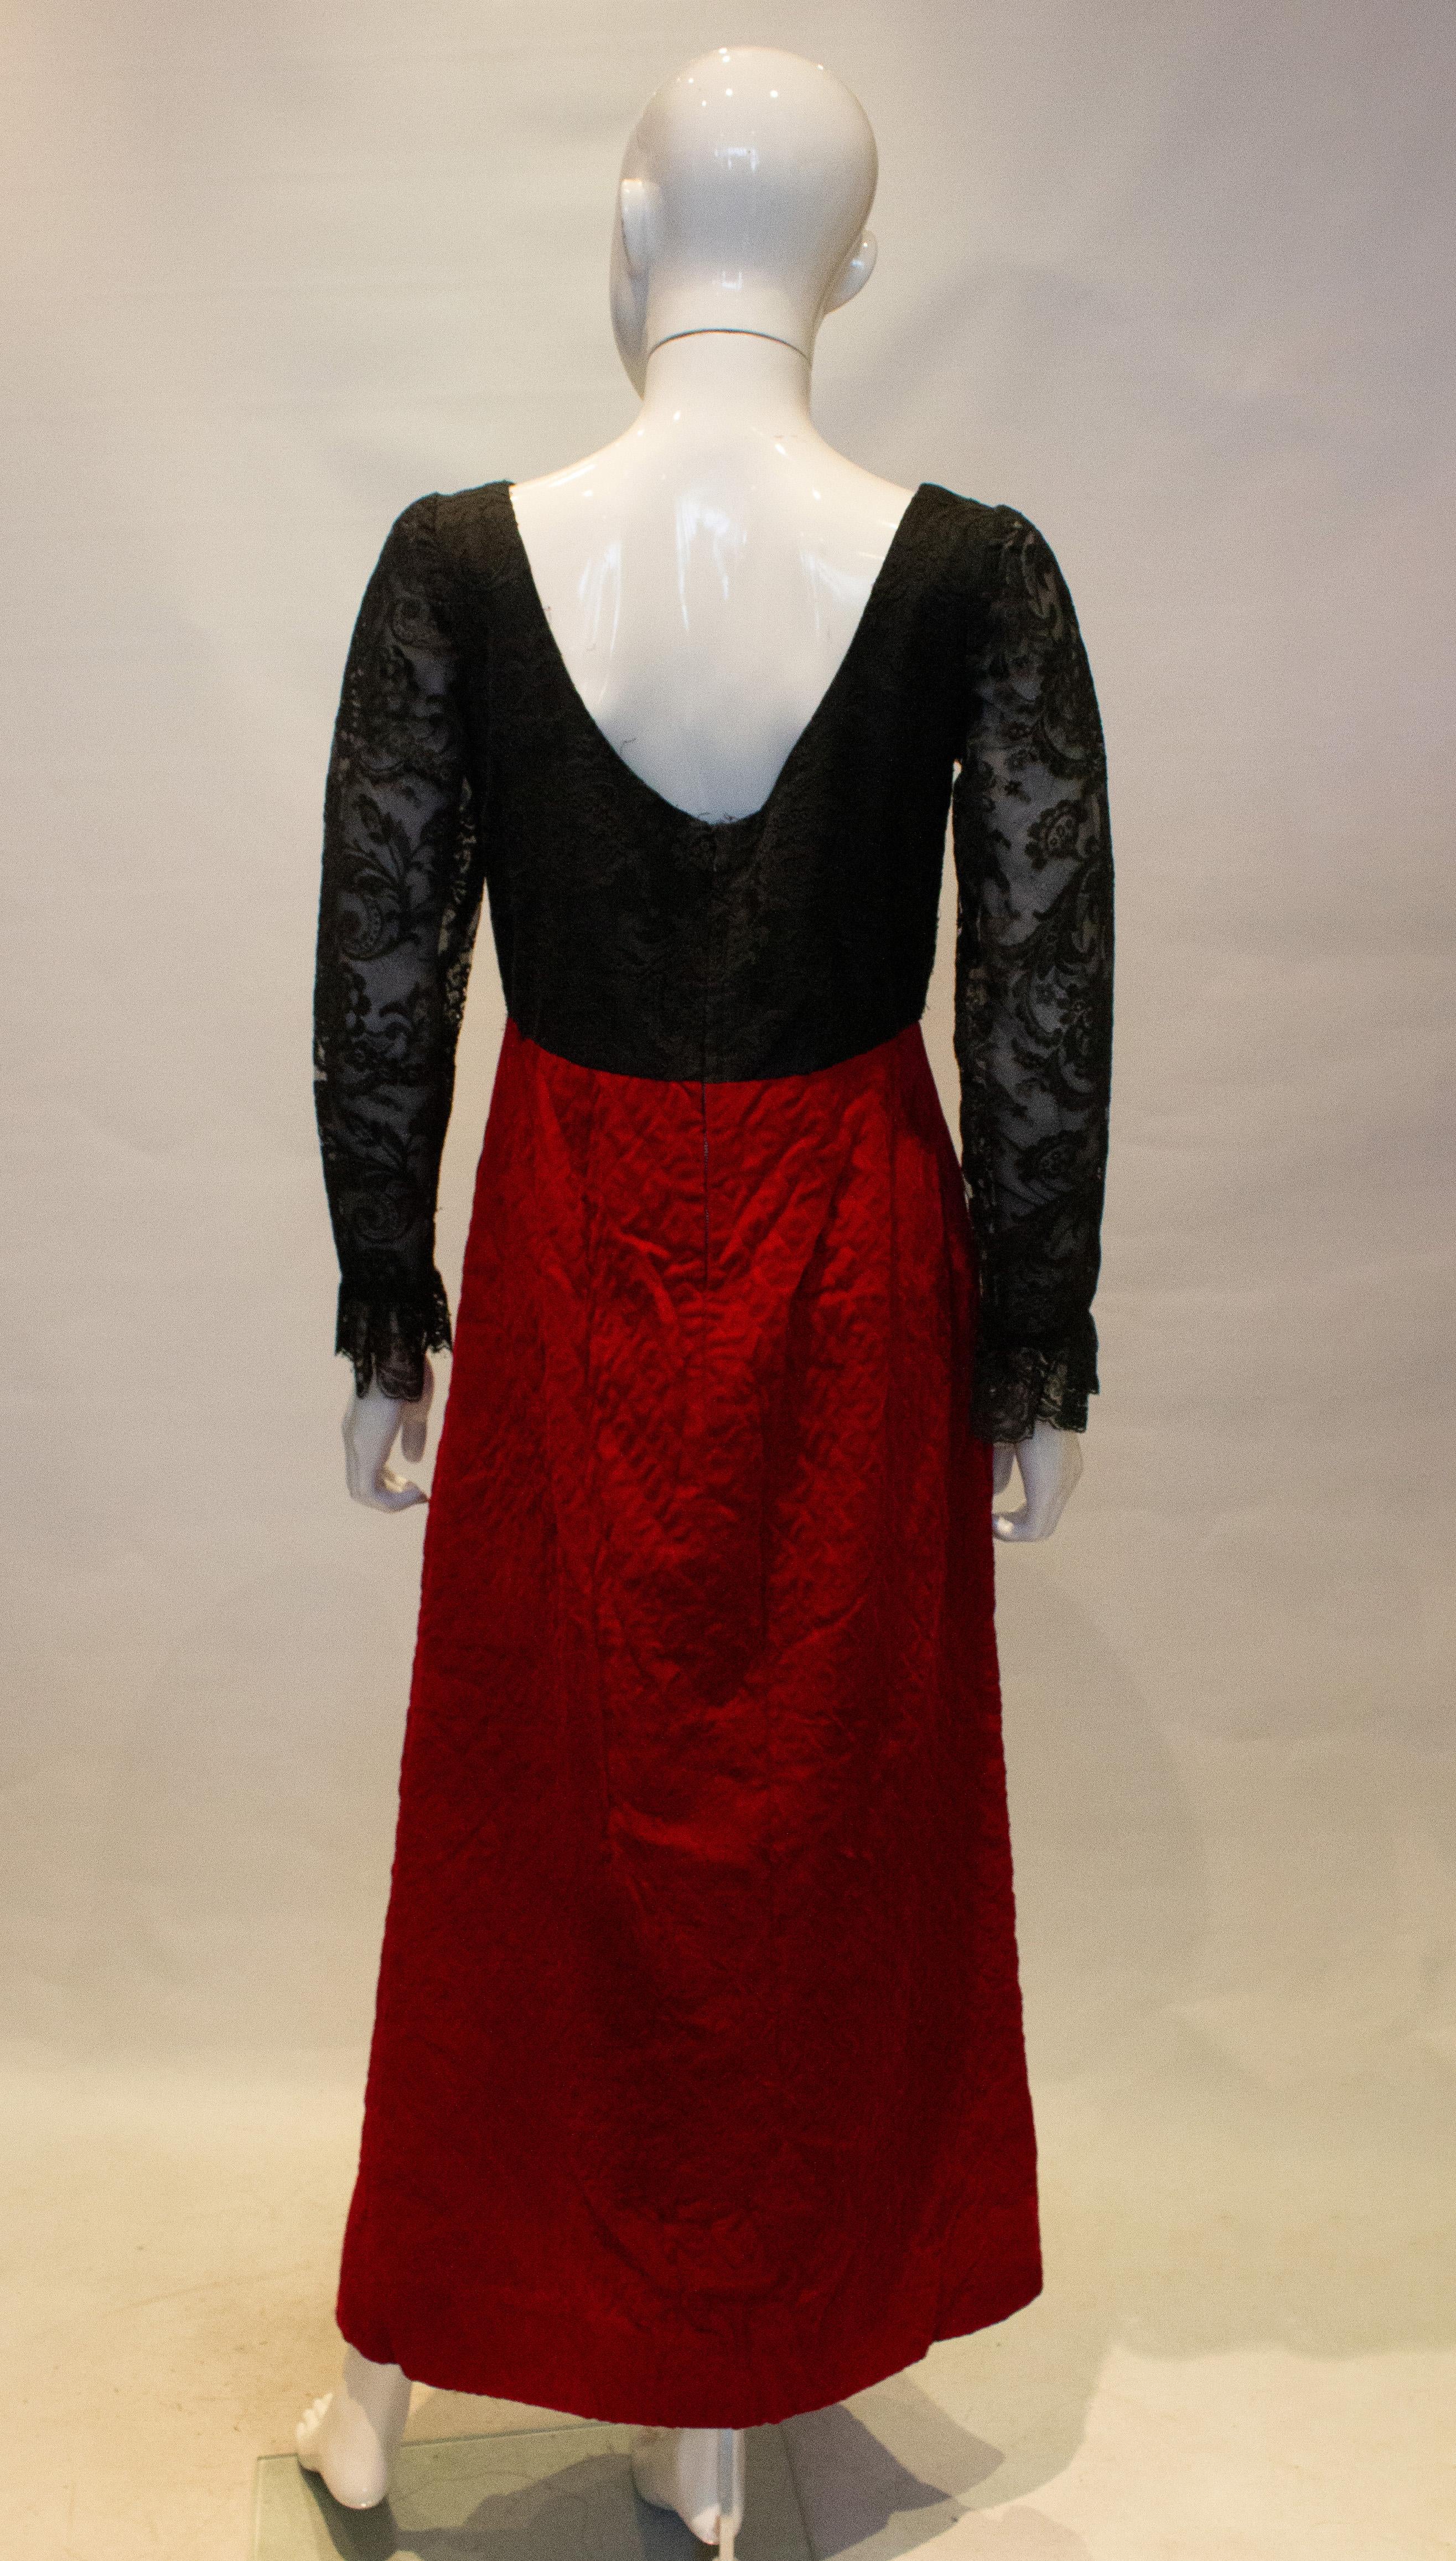 Ein tolles Vintage-Abendkleid für Herbst/Winter von Irving Ross. Das Kleid hat einen hübschen schwarzen  Spitzenmieder mit rotem, gestepptem Samtrock. Maße: Büste 36'', Länge 54'' plus 4'' Saum.